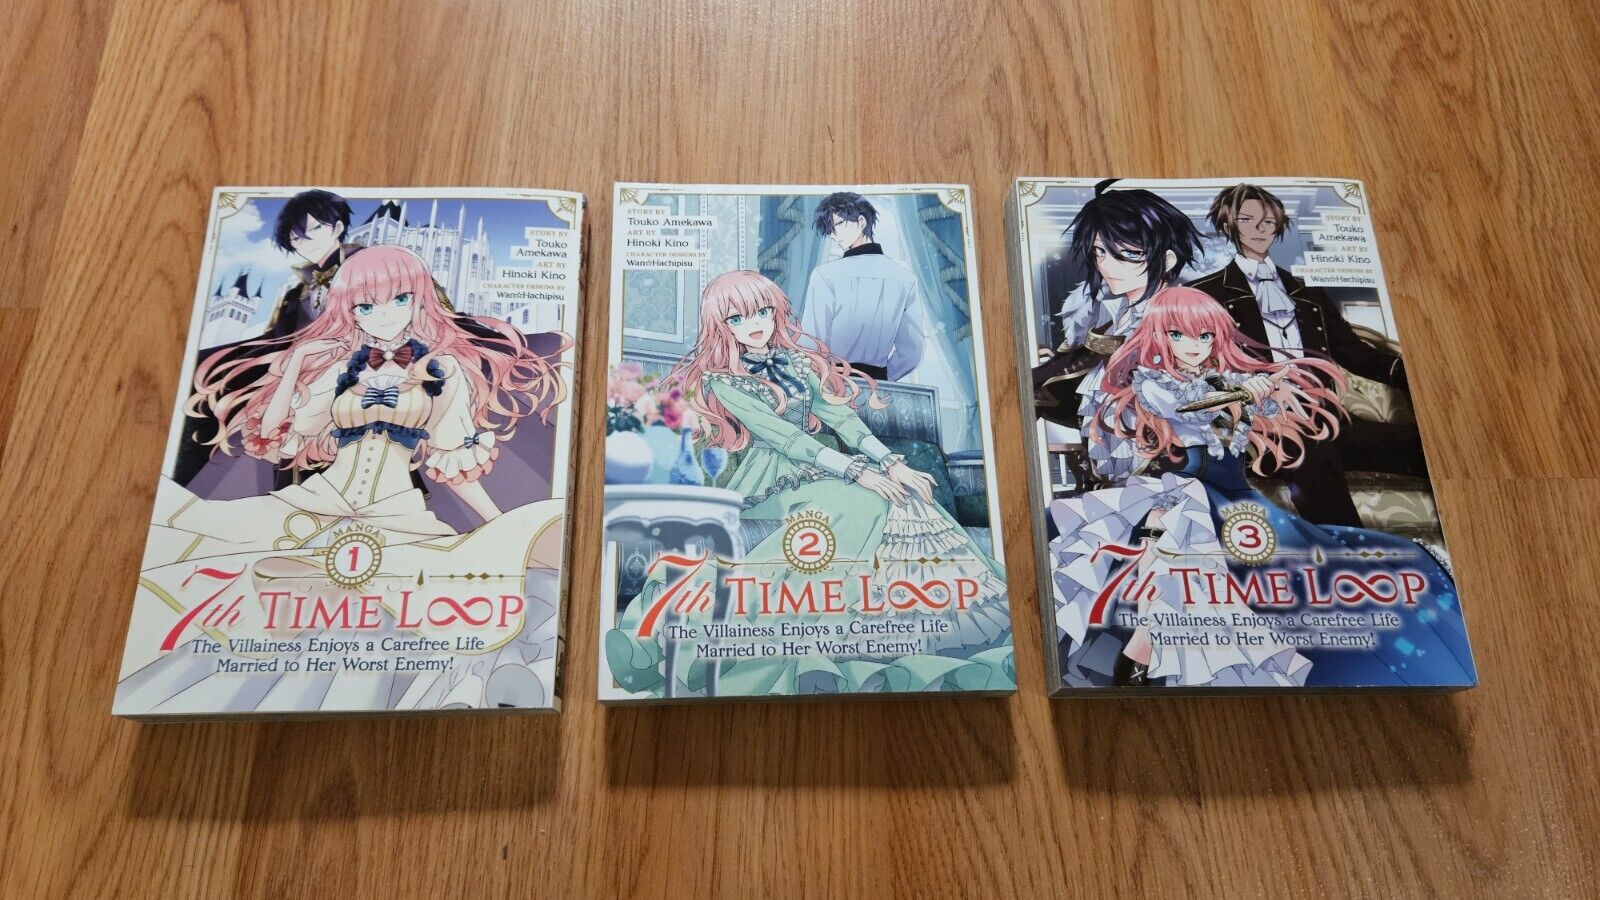 7th Time Loop Manga Volume Vol. 1 2 3 1-3 Touko Amekawa Hinoki Kino Seven Seas